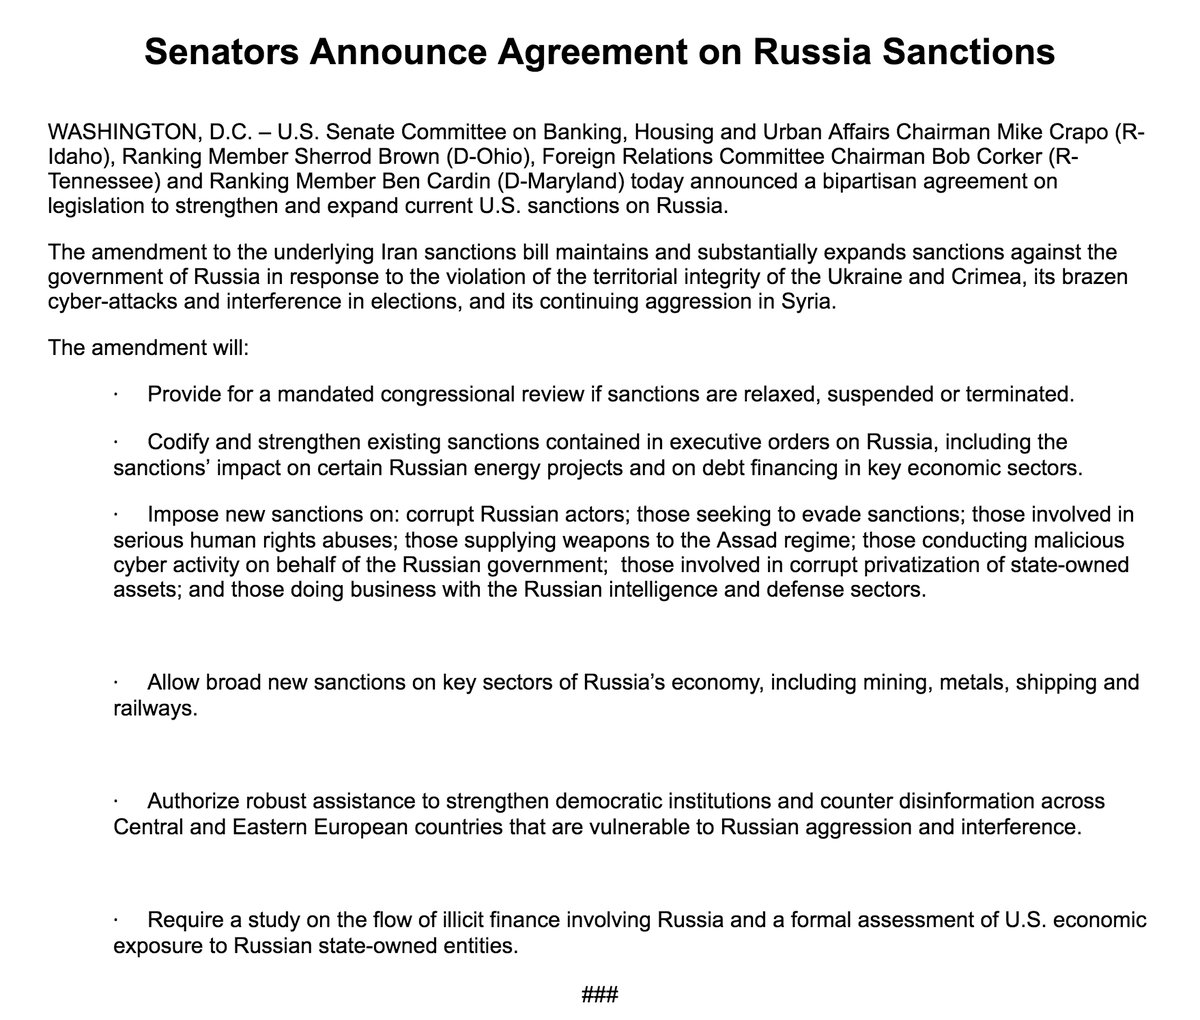 У сенаторів є угода про нові санкції проти Росії; Заборона угод Трампа від скасування і ослаблення санкцій без схвалення Конгресу